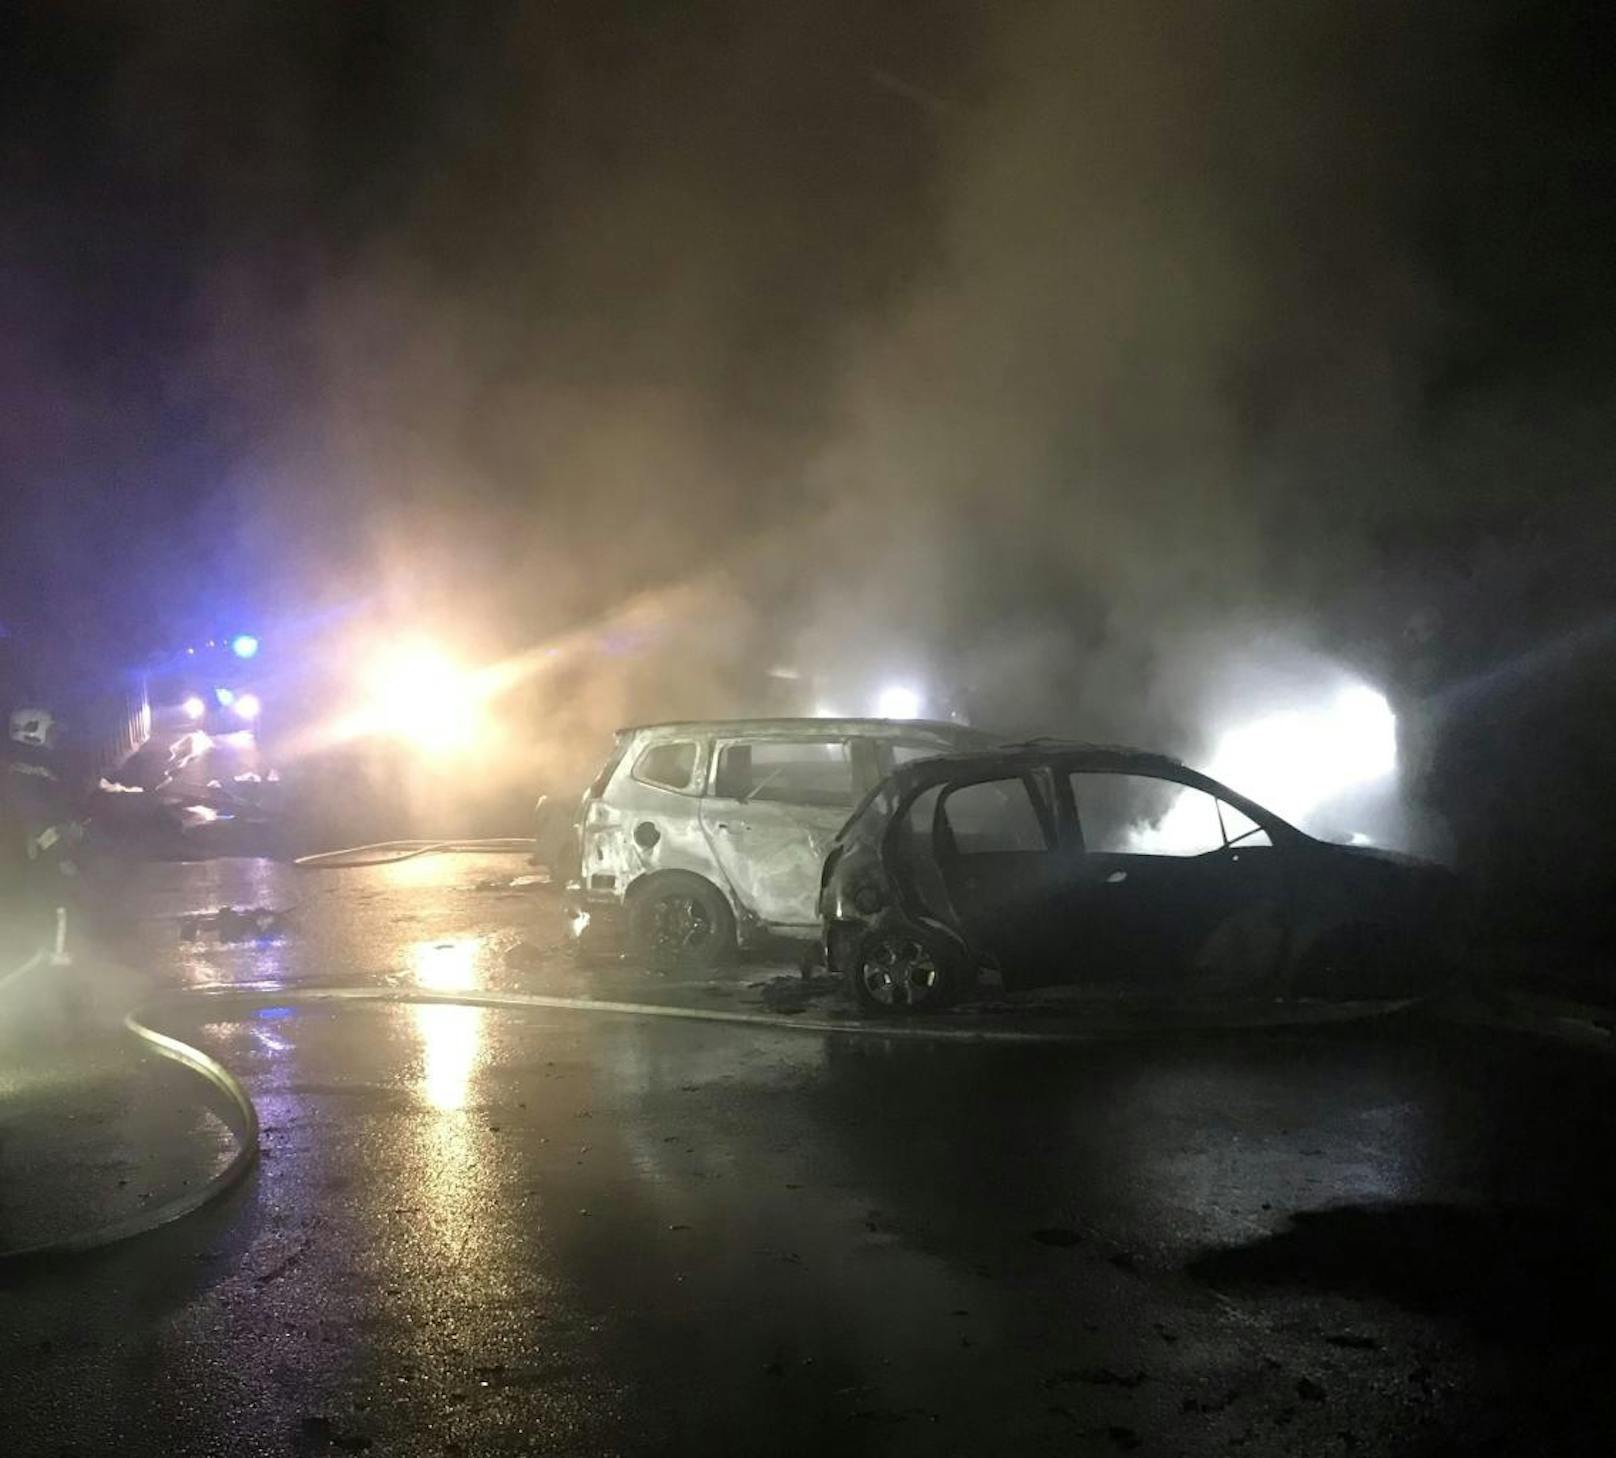 Am Mittwochmorgen brannten vier Autos in Wien-Liesing komplett aus. Sie waren unweit eines Wohnhauses geparkt. Zuvor hatten Anrainer eine Explosion gehört.